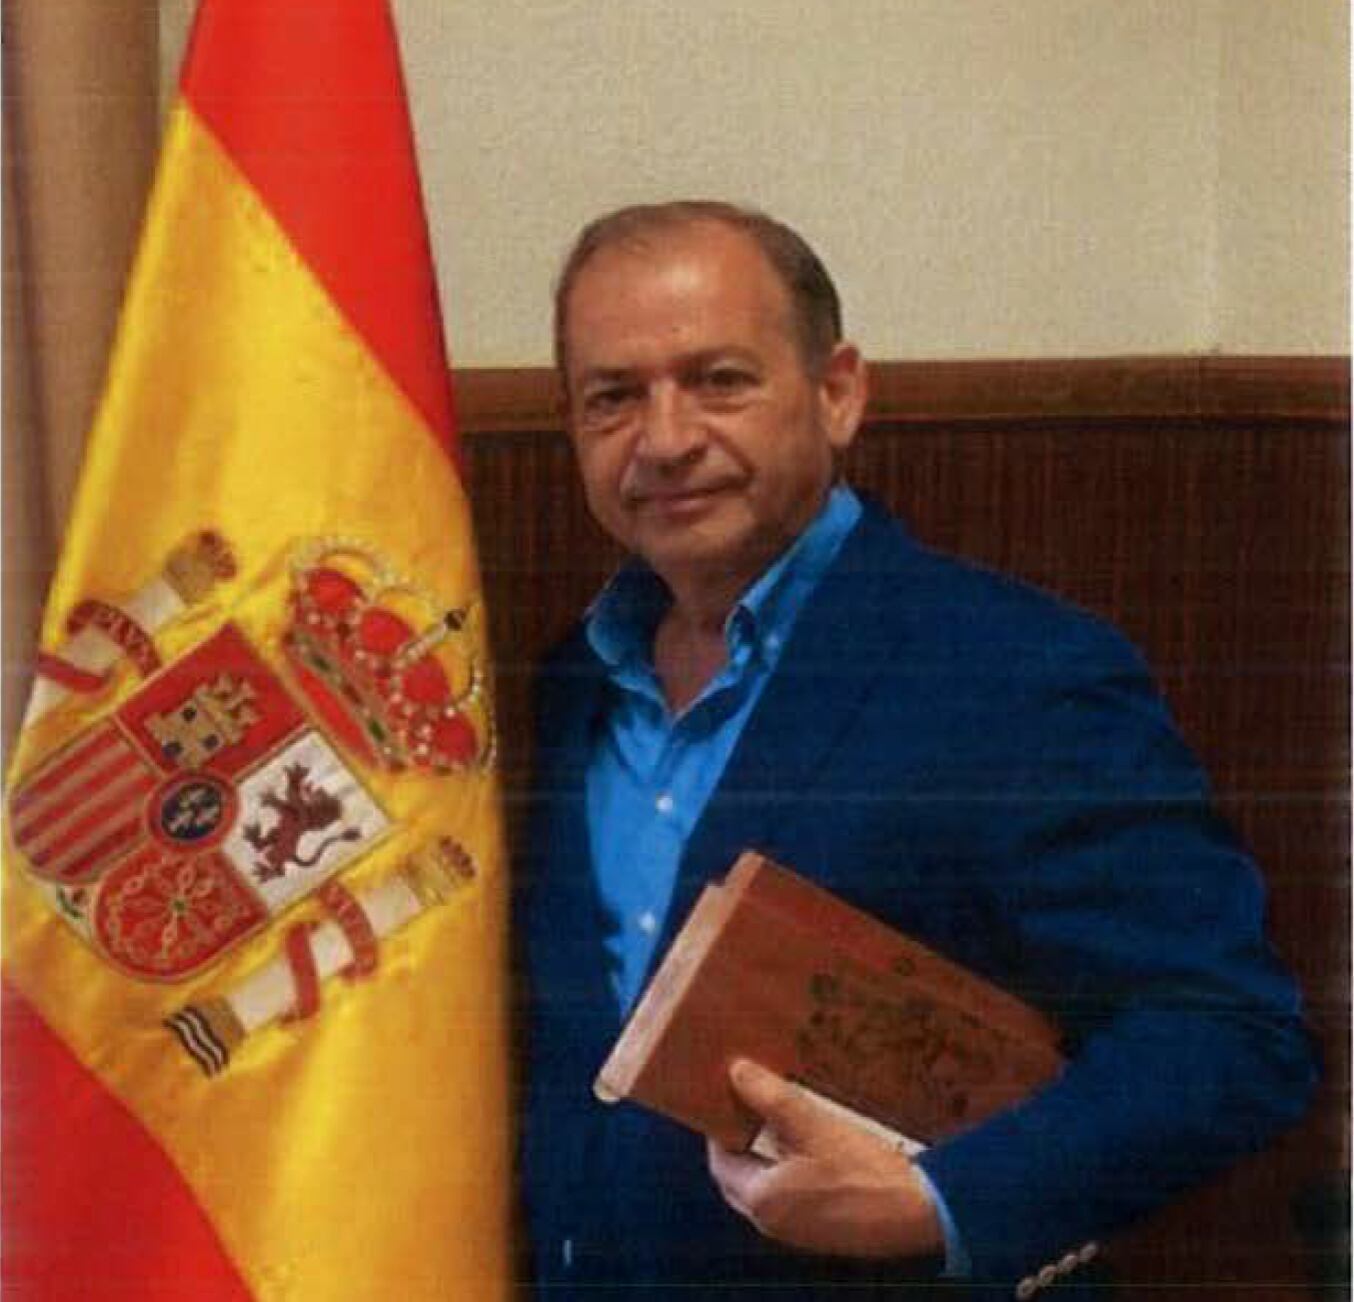 El general Francisco Espinosa Navas, ante una bandera y con una caja de puros regalada por un integrante de la trama, el 1 de septiembre de 2020.